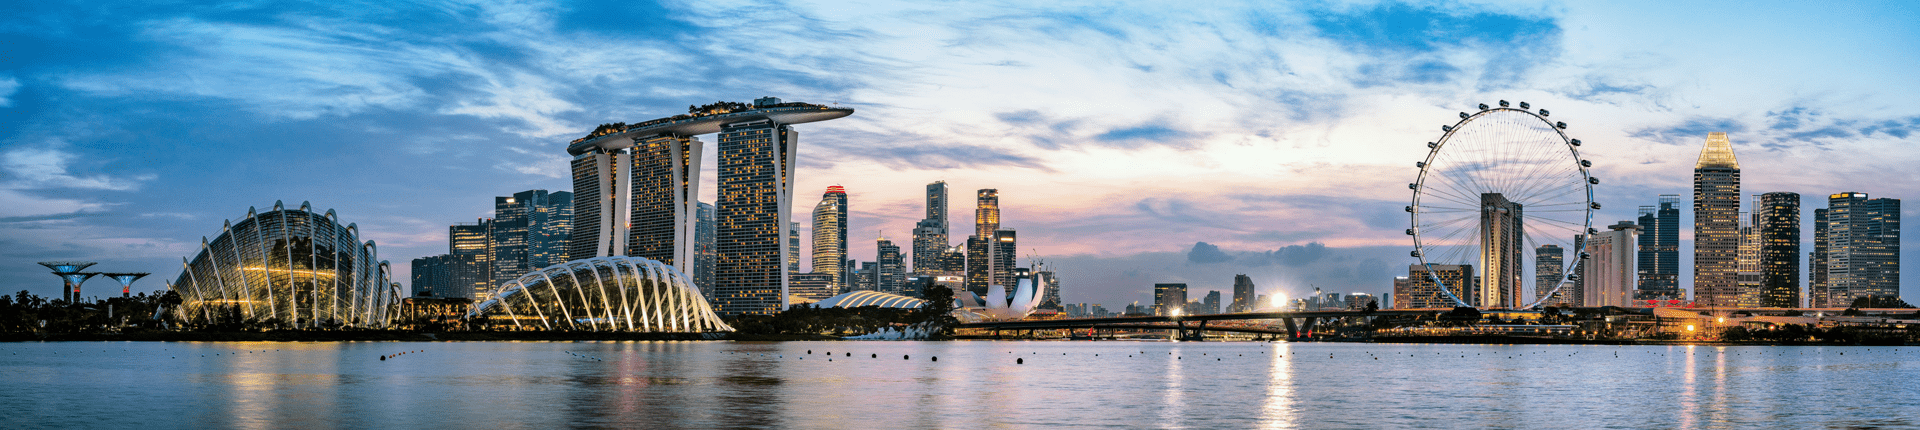 Singapore background